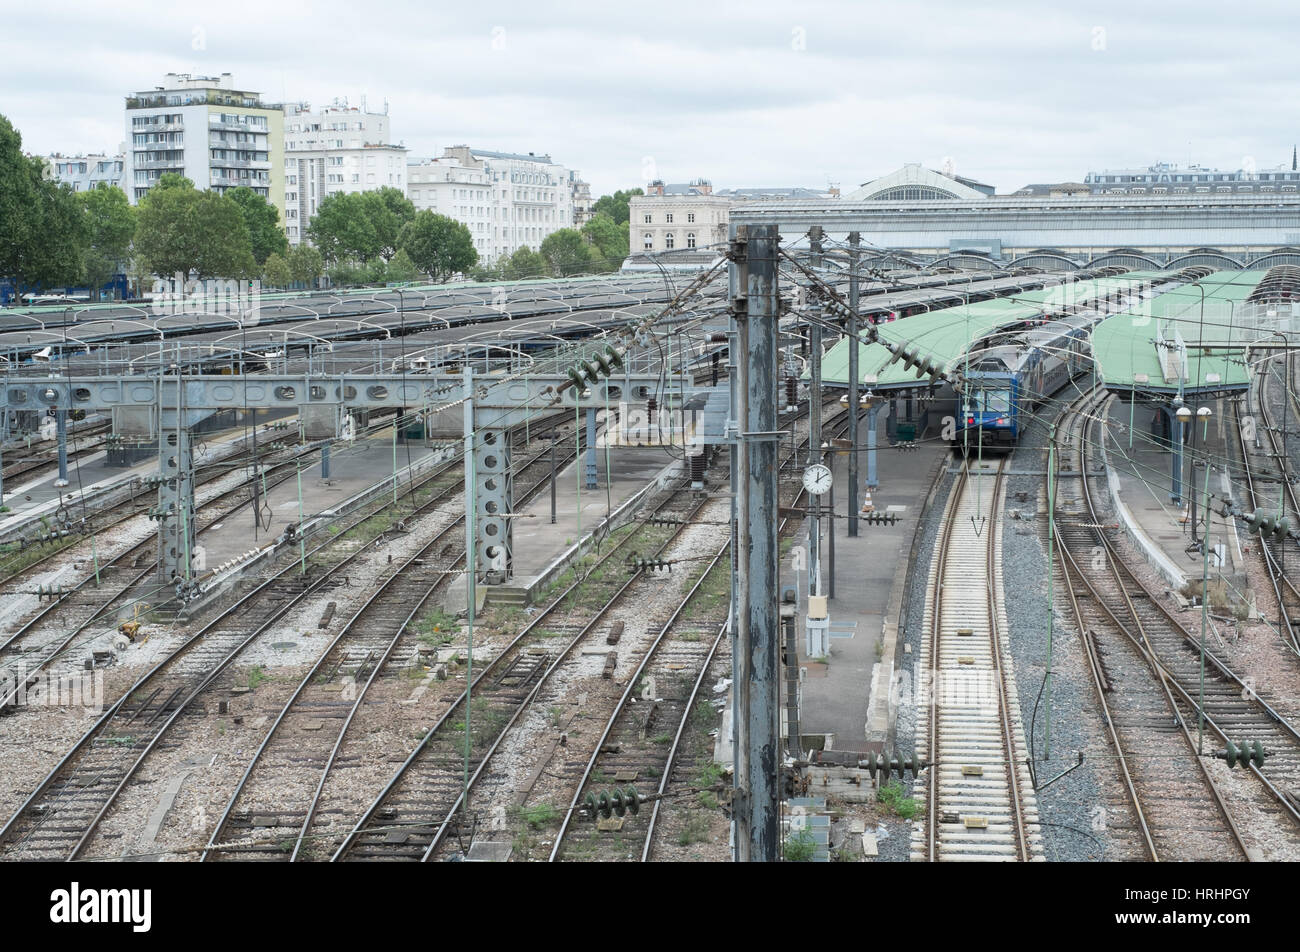 Paris Gare de l'Est railway station Stock Photo